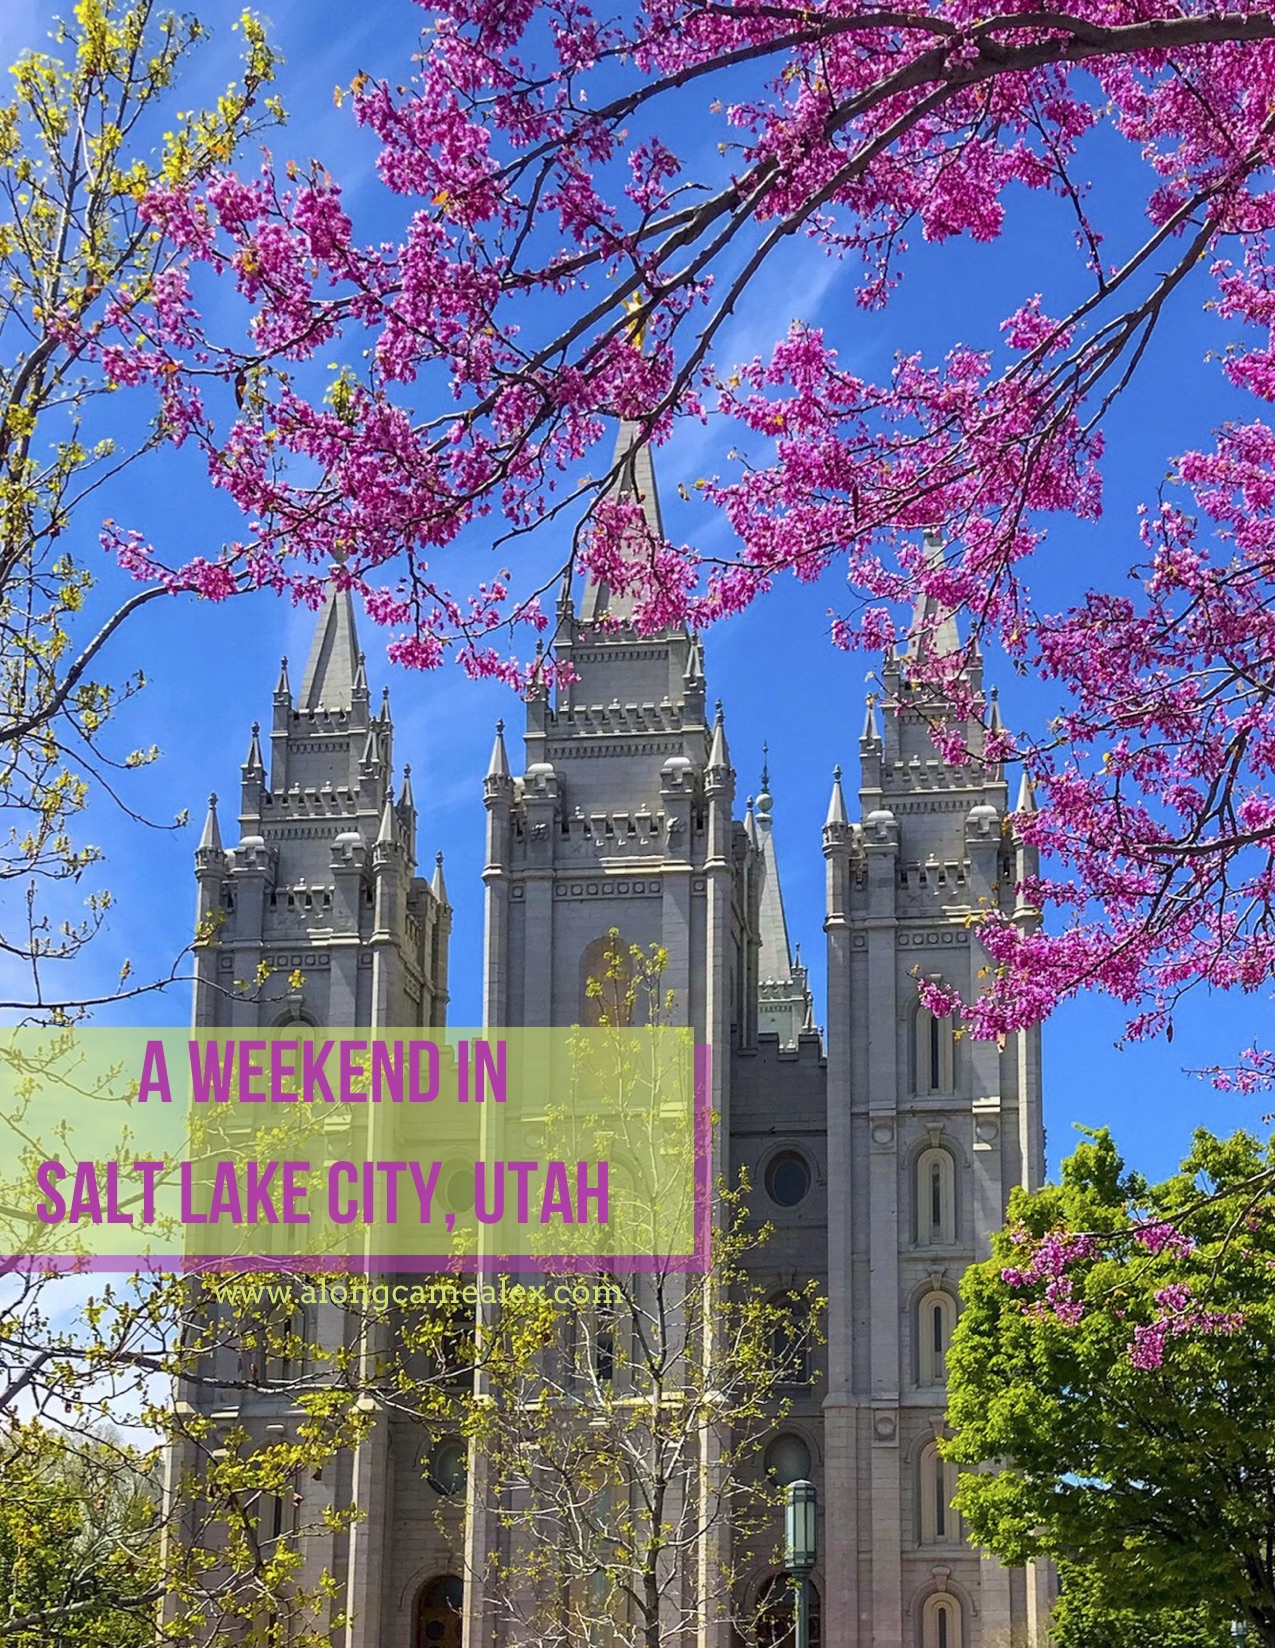 A Weekend in & around Salt Lake City, Utah